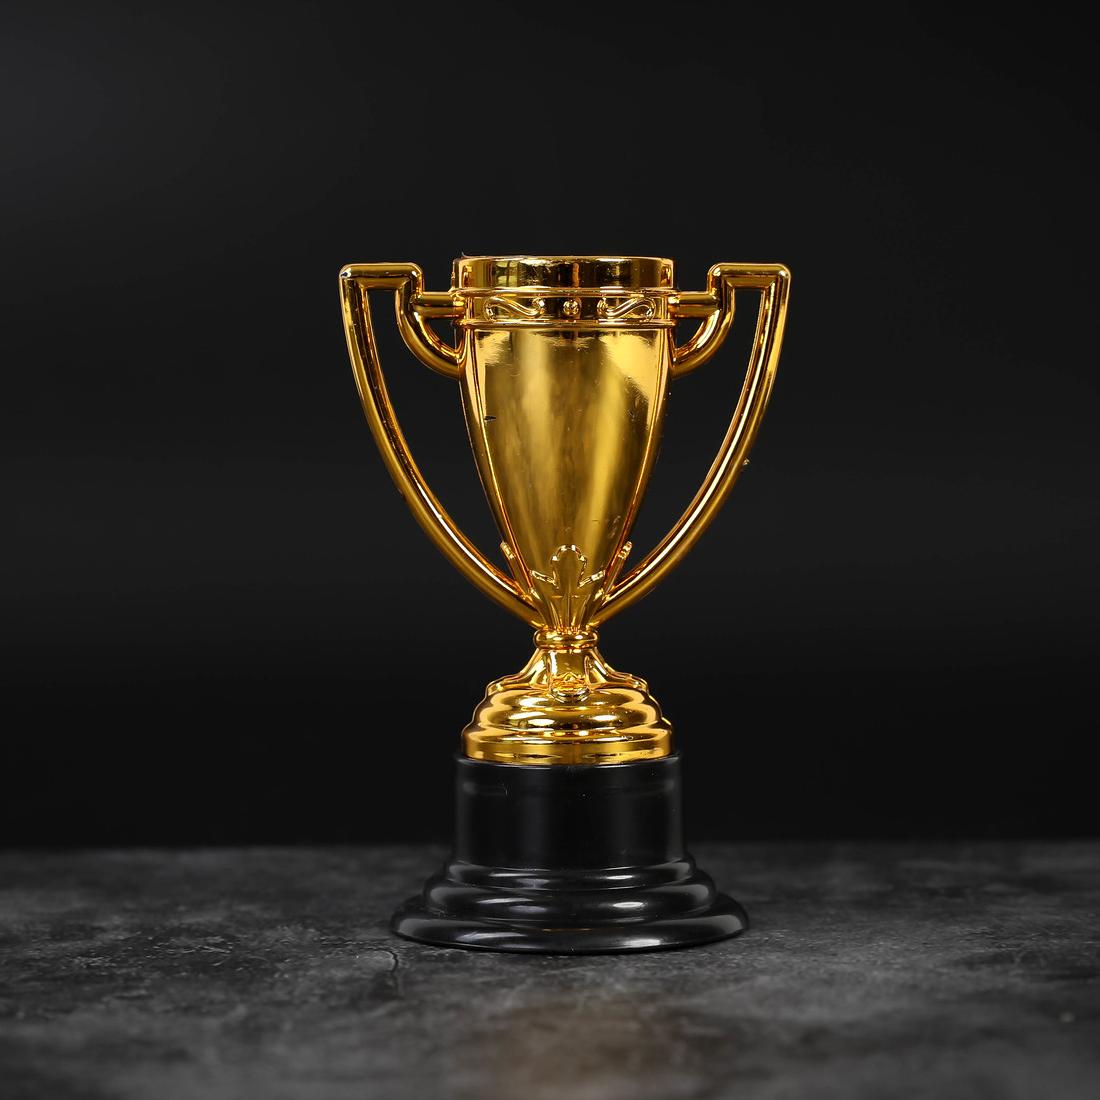 Golden trophy on a black background.